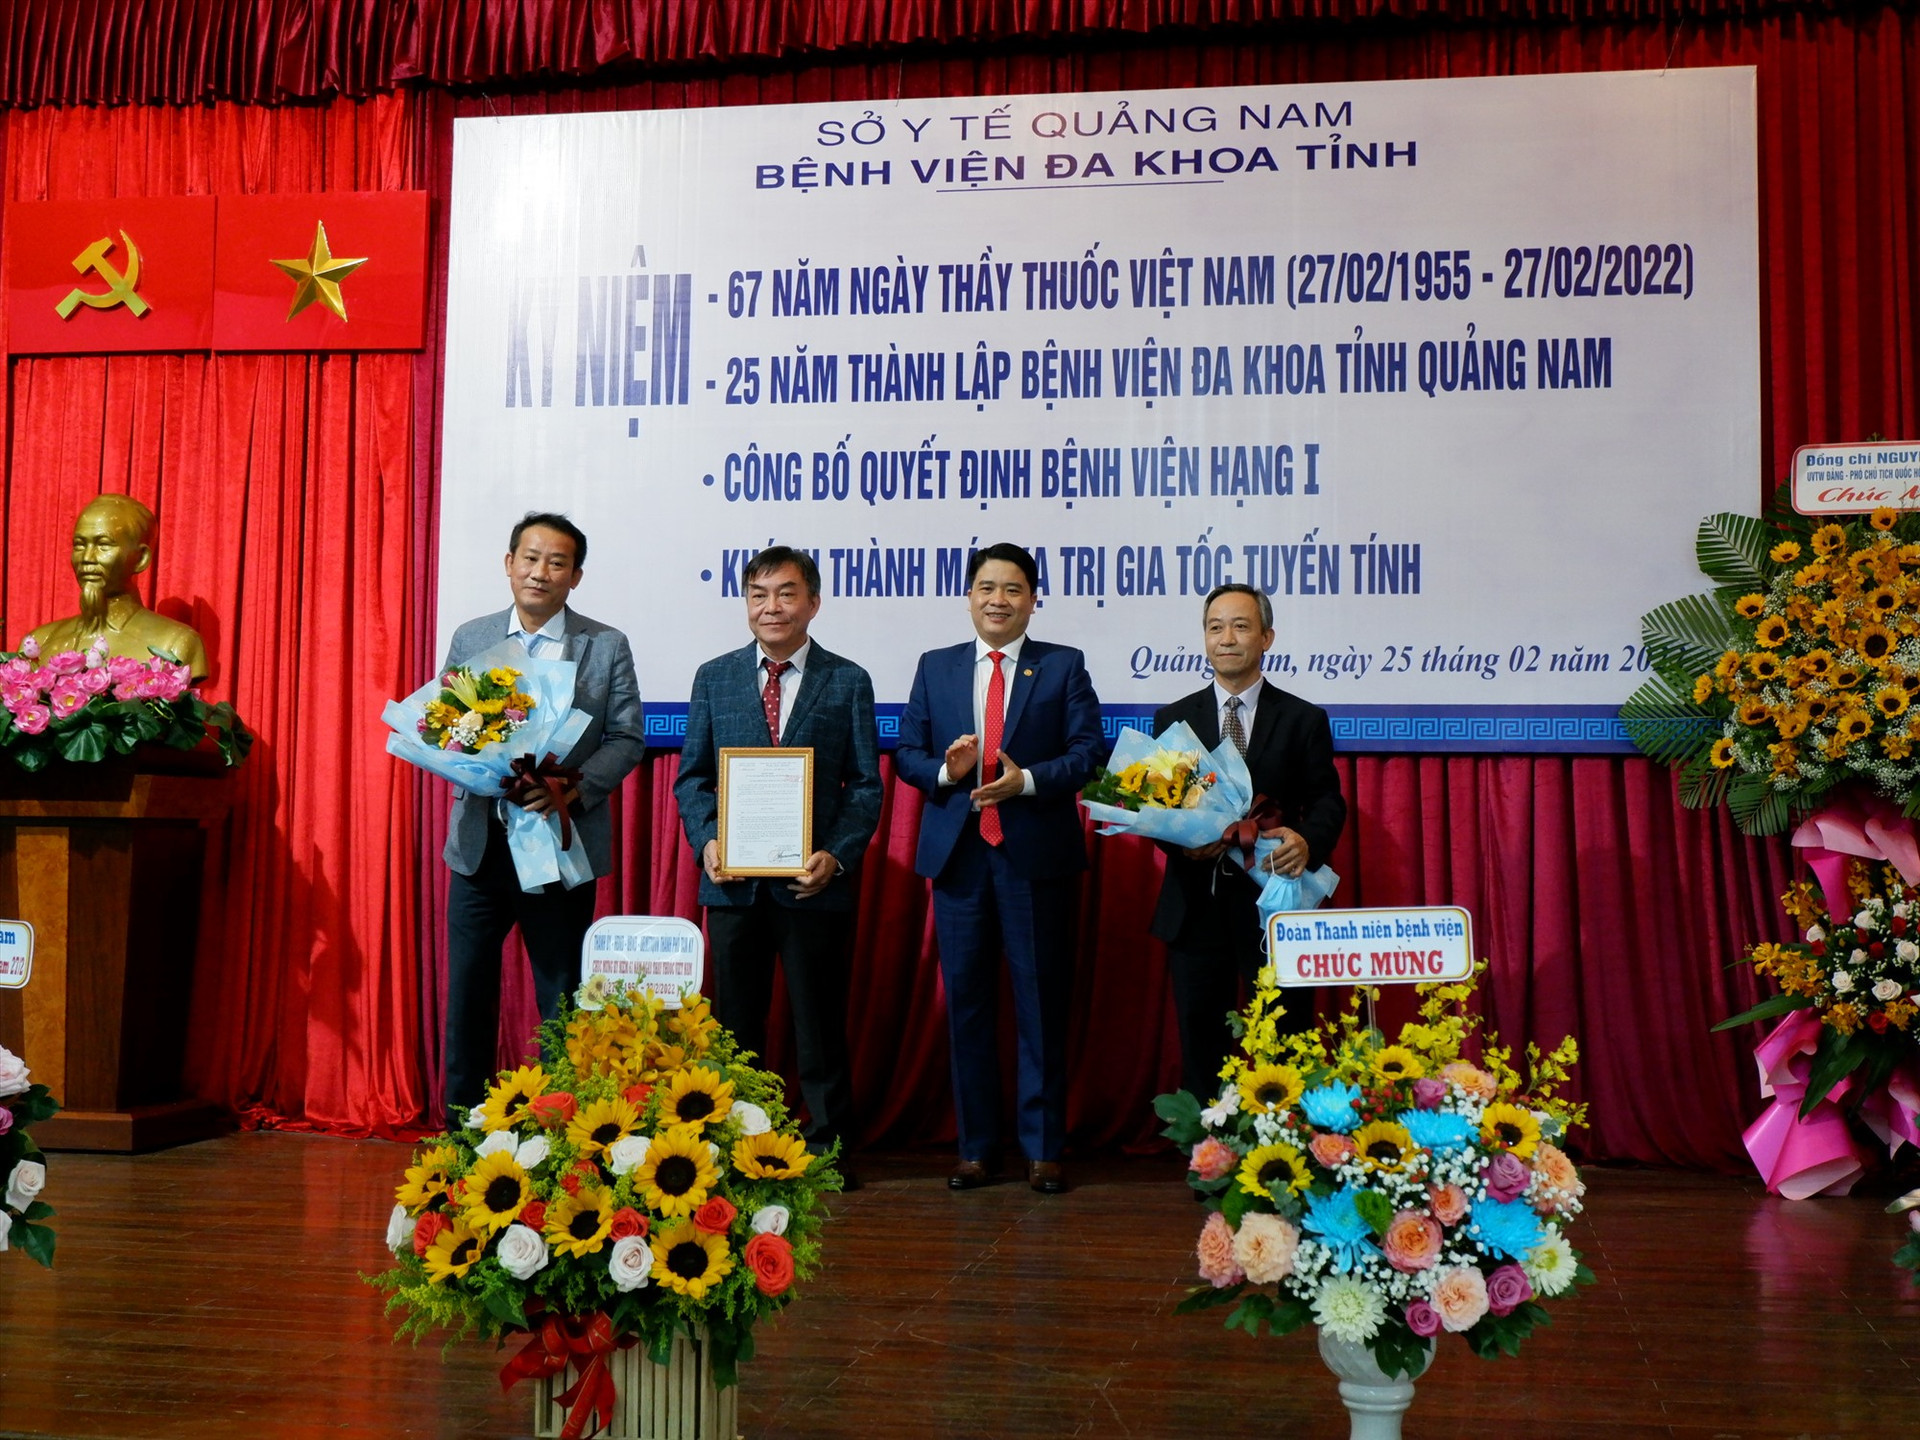 Phó Chủ tịch UBND tỉnh Trần Văn Tân trao quyết định Bệnh viện hạng 1 cho Bệnh viện Đa khoa tỉnh Quảng Nam. Ảnh: X.H